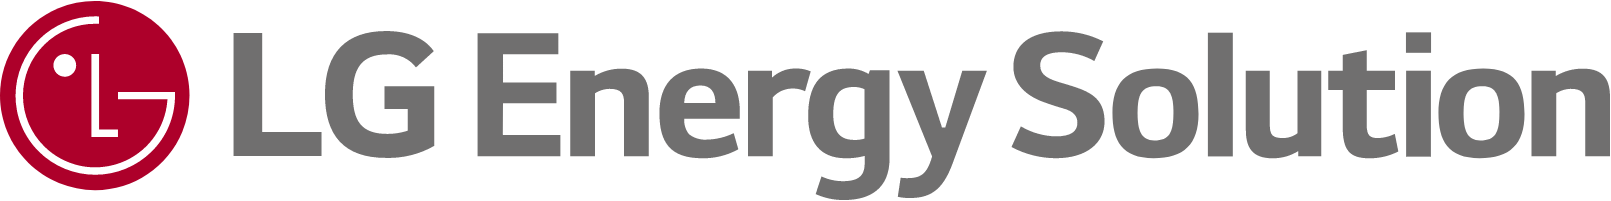 Merkevare: LG Energy